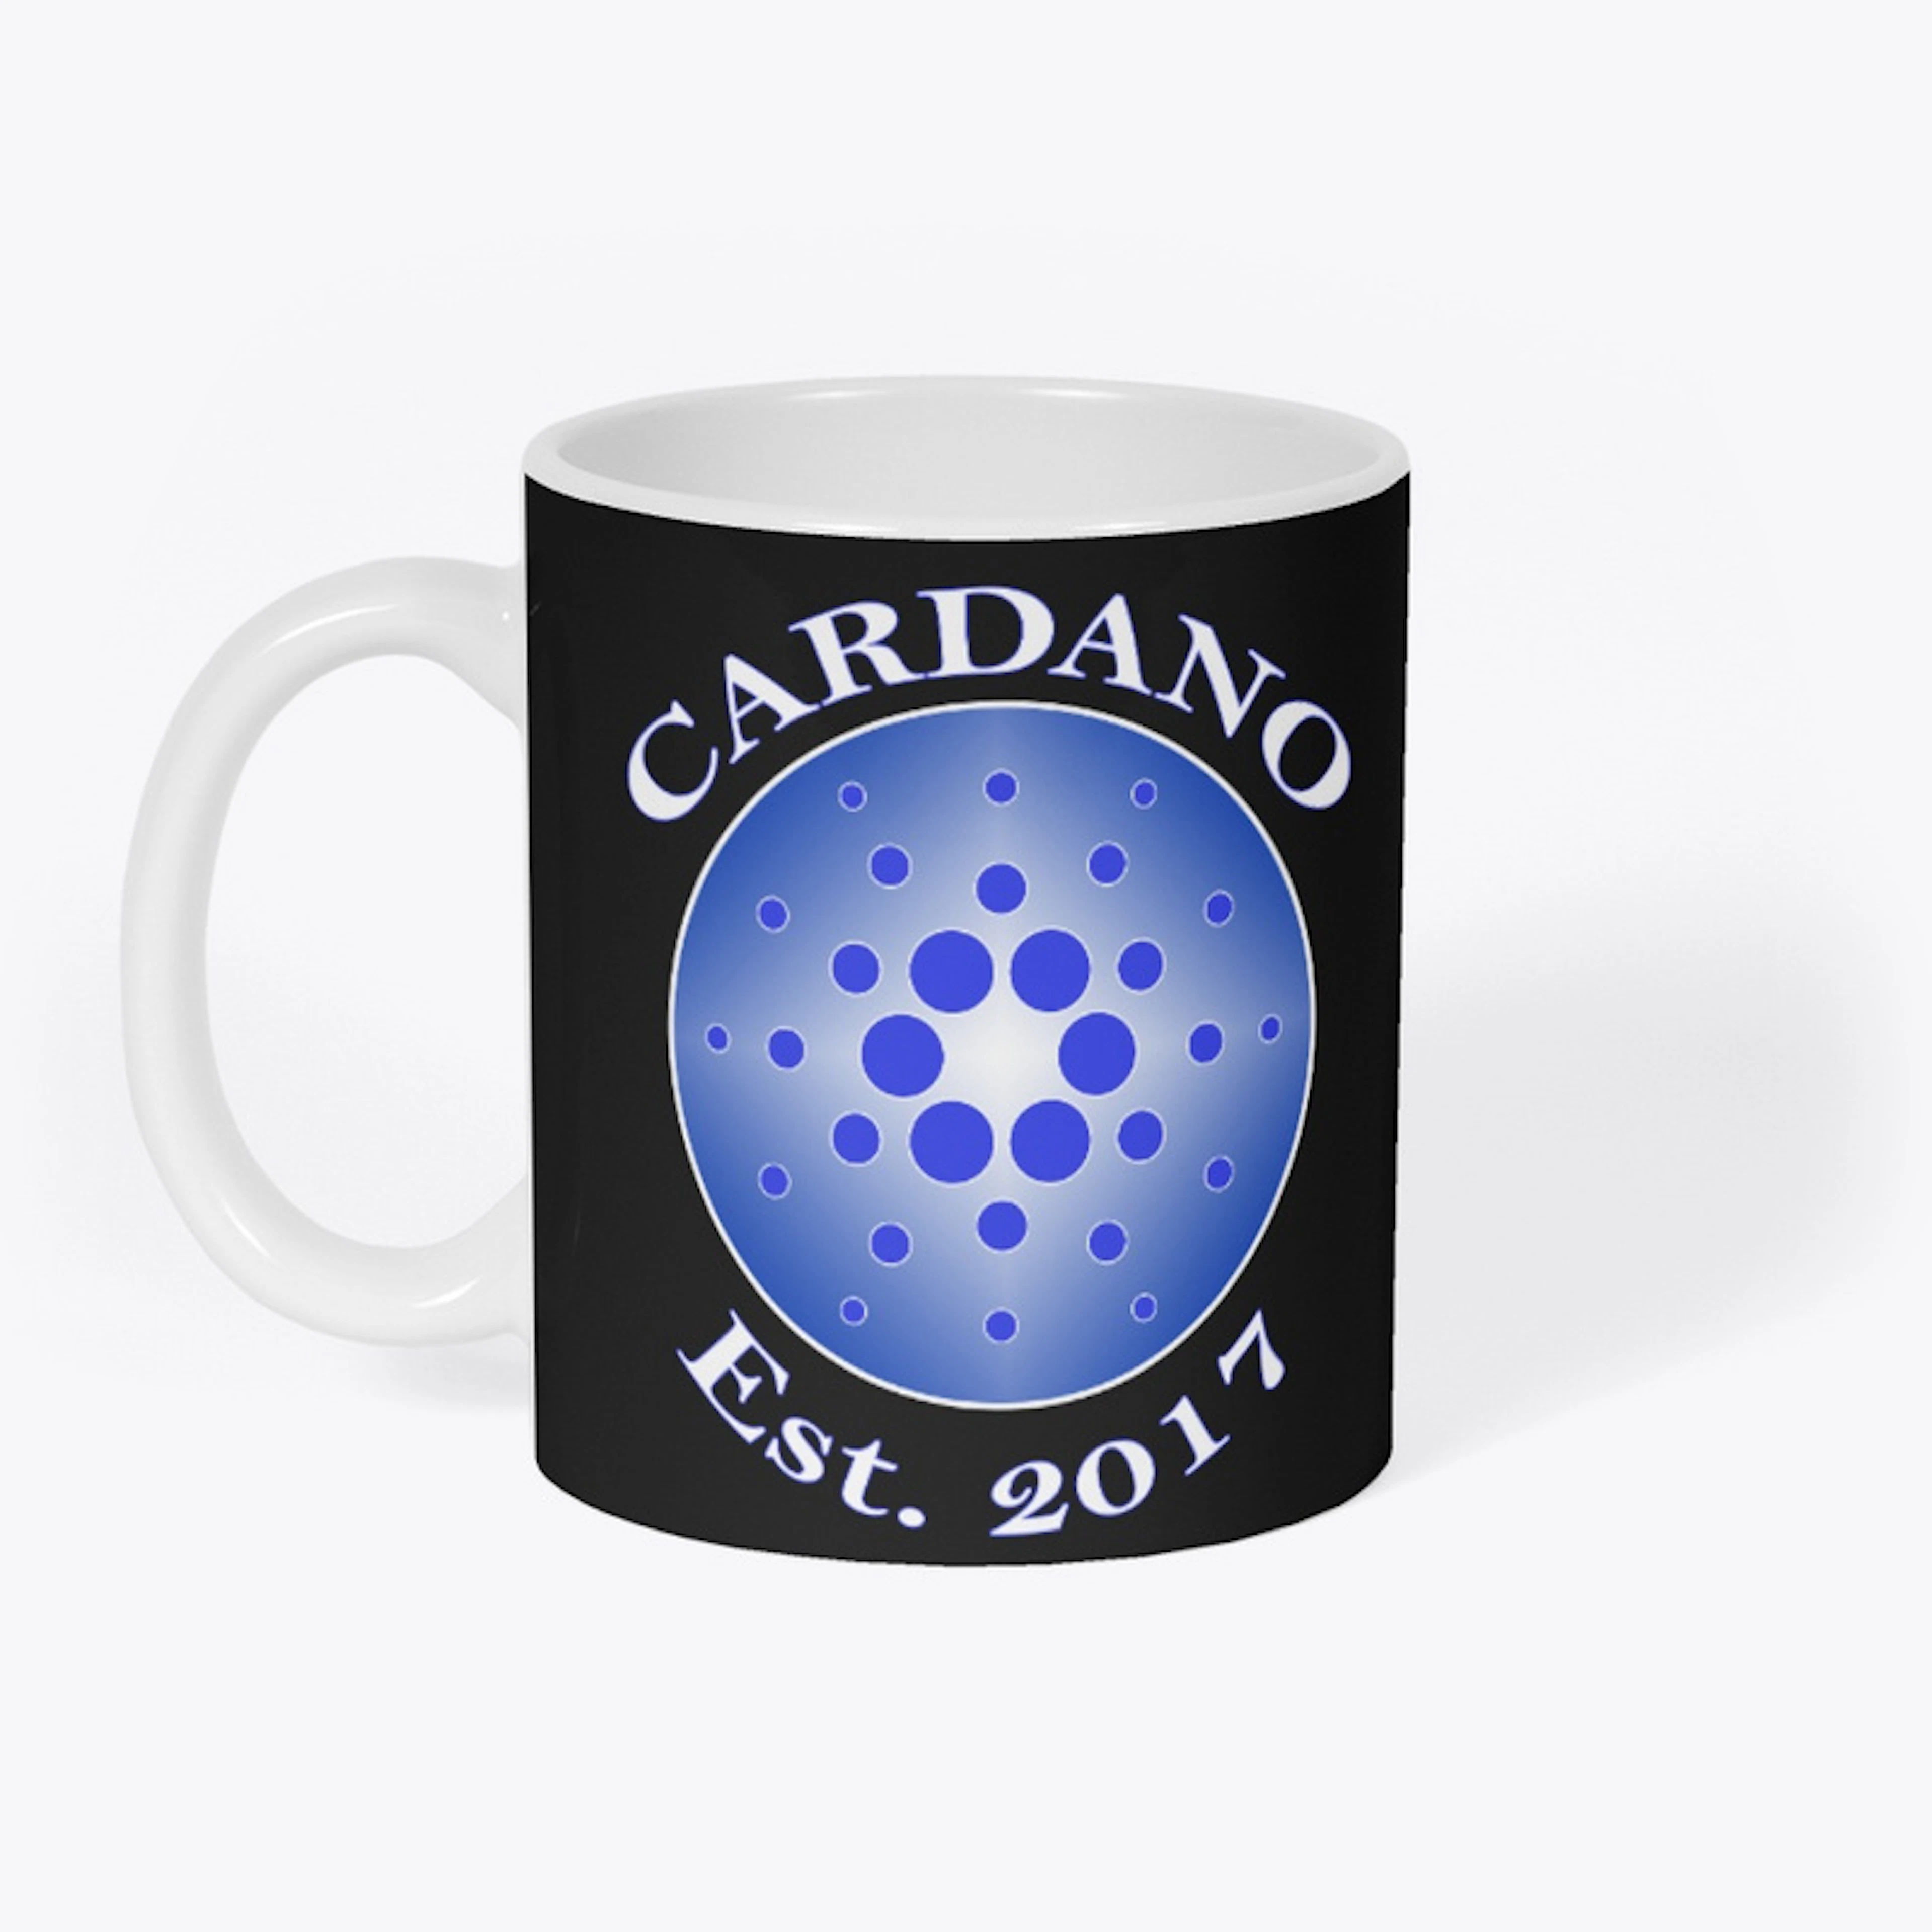 Cardano Est 2017